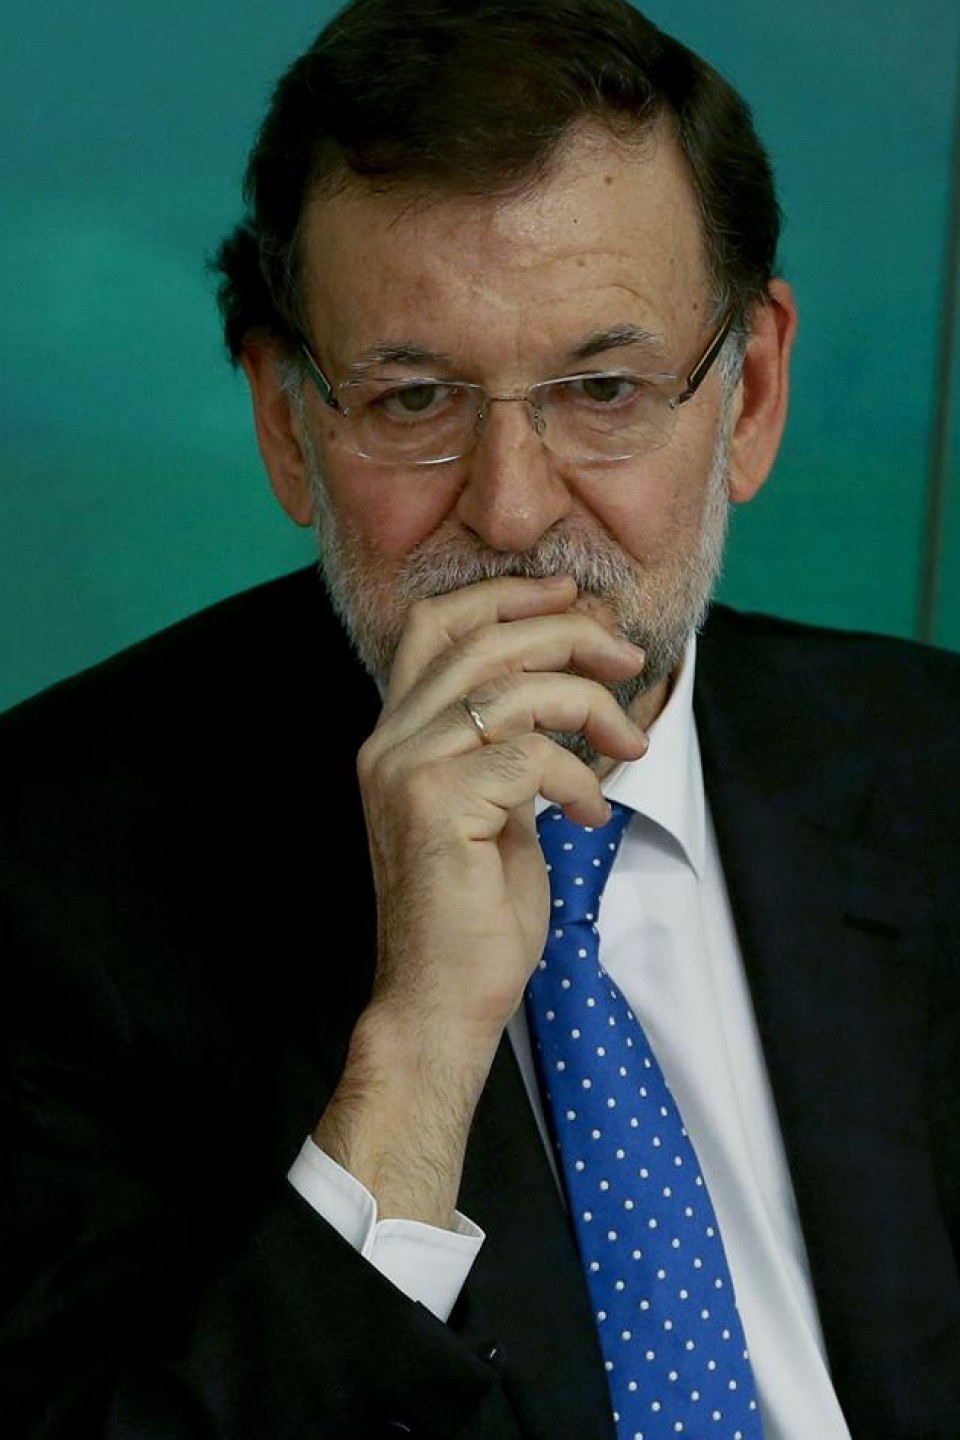 Rajoyk dio emaitzak ezin direla hauteskunde orokorretara estrapolatu